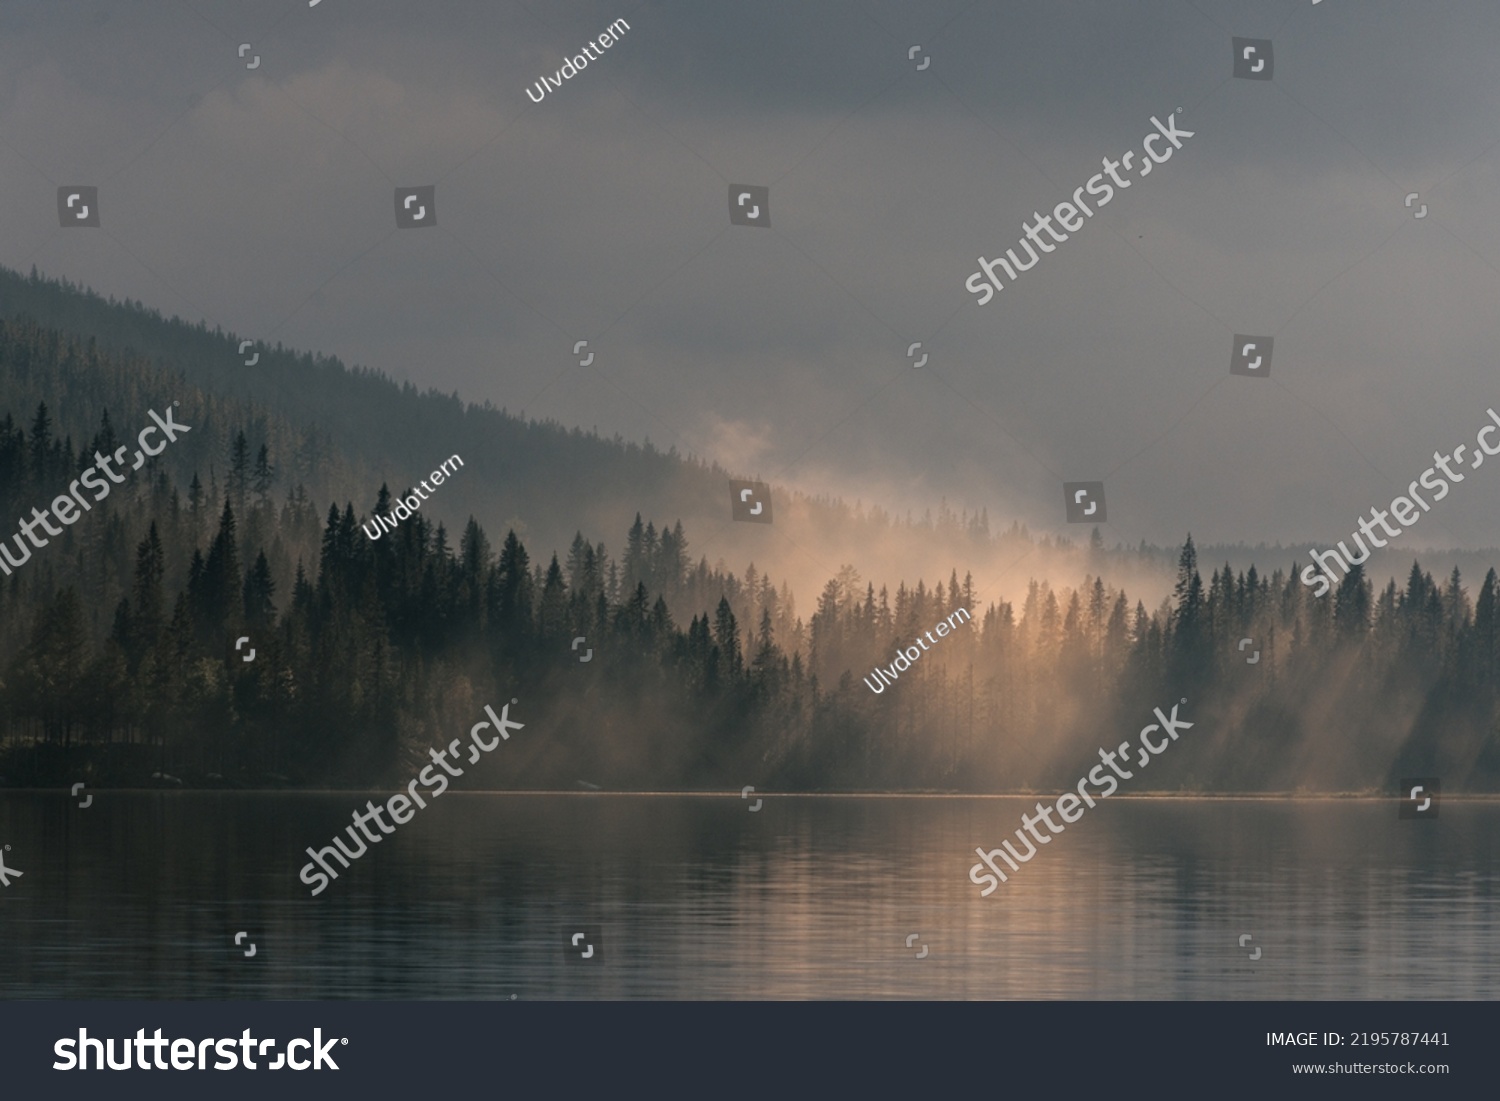 Foggy forest in navardalen sweden #2195787441